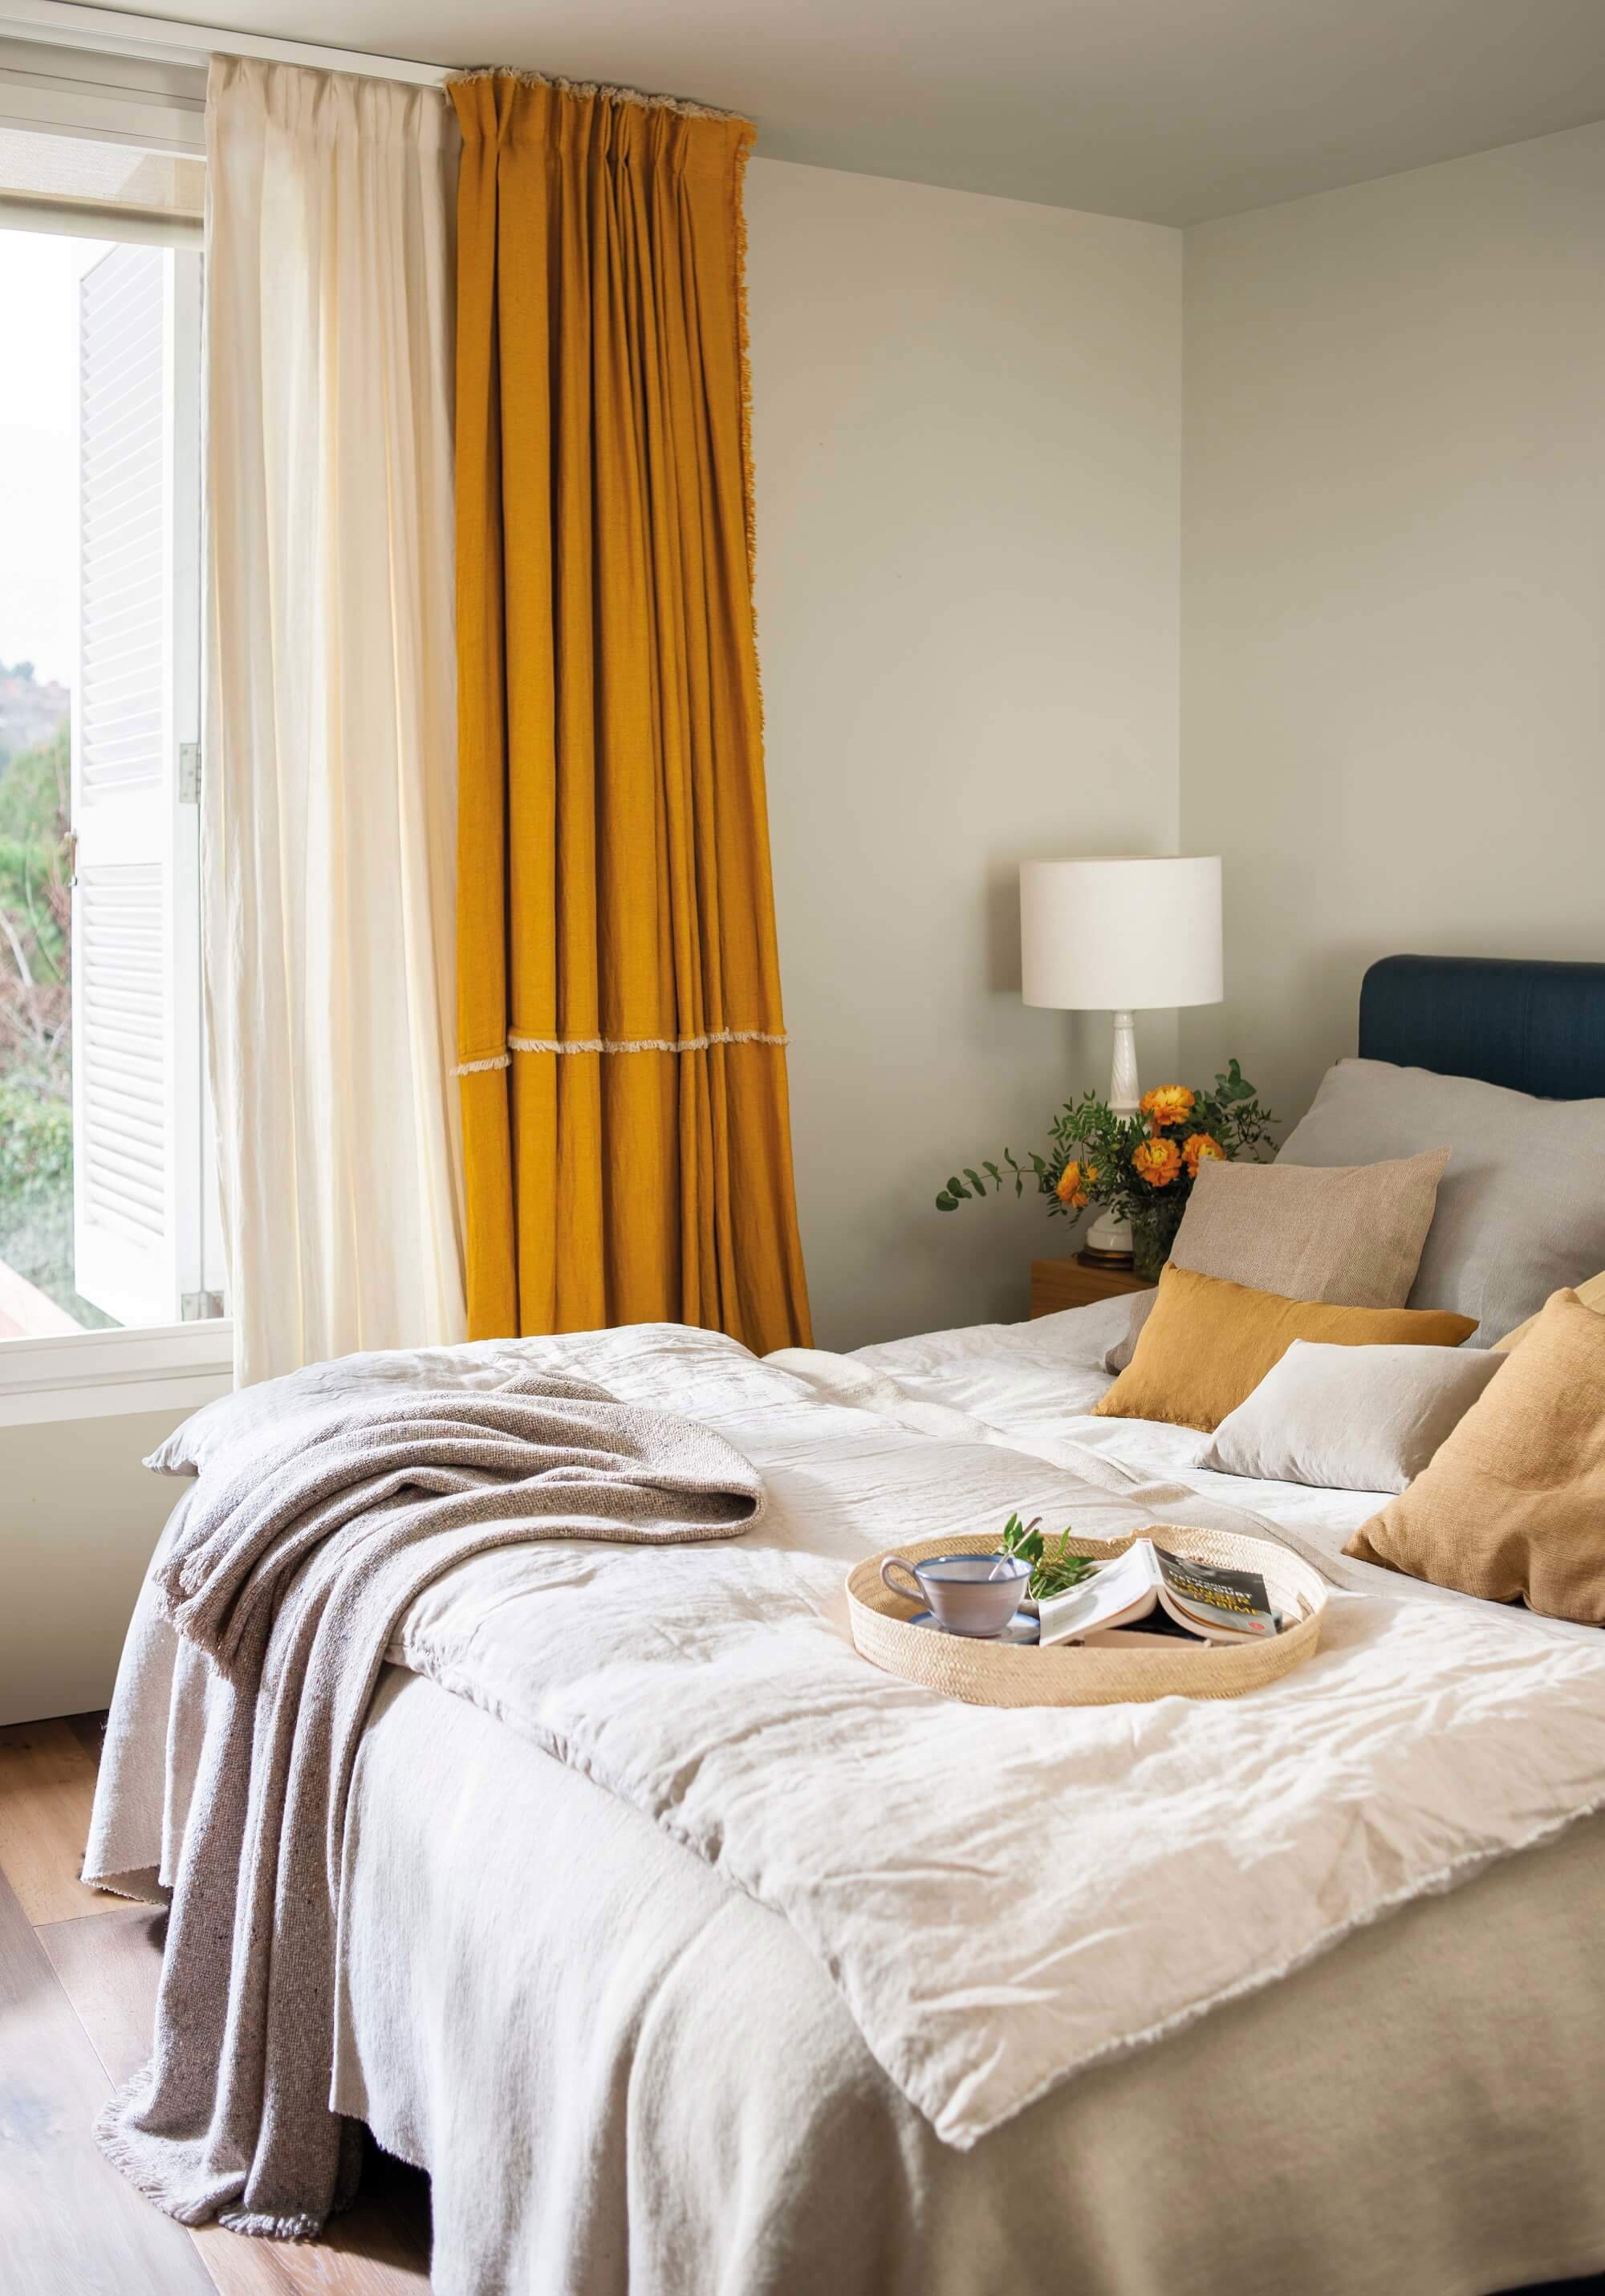 Dormitorio con visillos y cortinas de color mostaza.